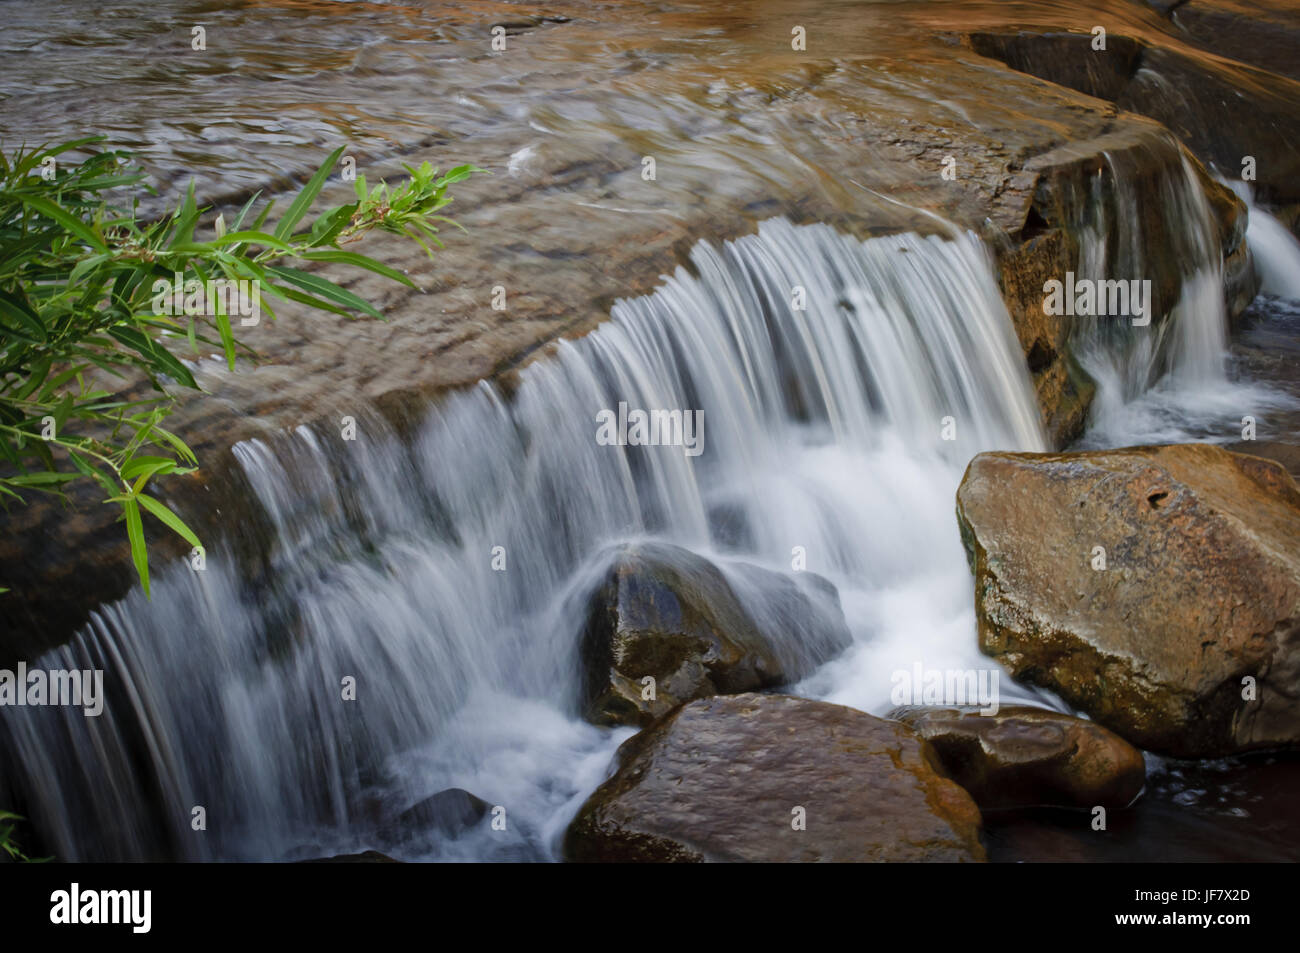 El agua dulce que fluye sobre piedras en un arroyo. Foto de stock